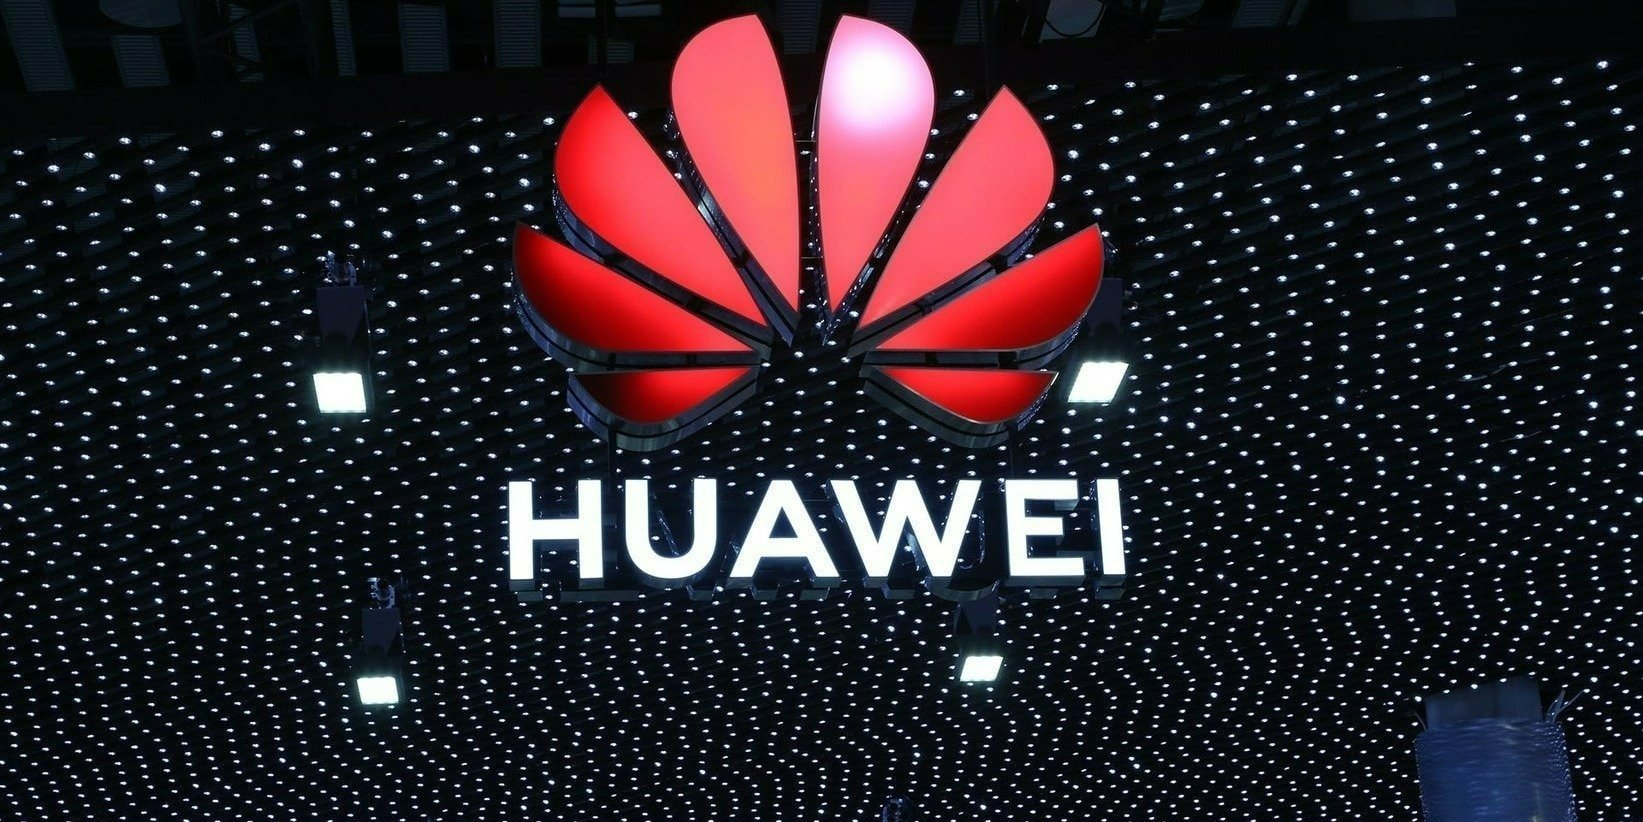 Amazon i Huawei podpisały globalną umowę patentową